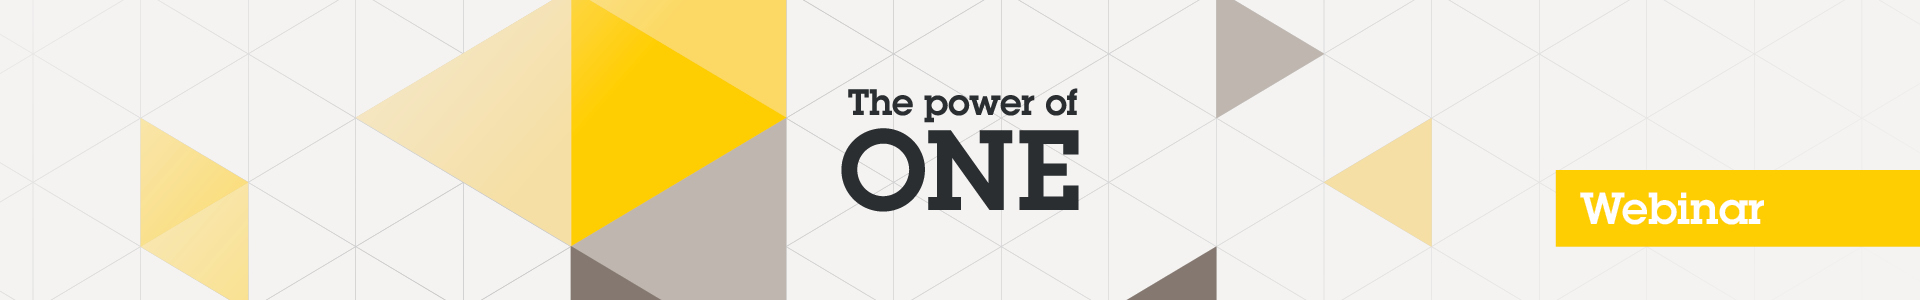 Webinar E2E - The Power of ONE